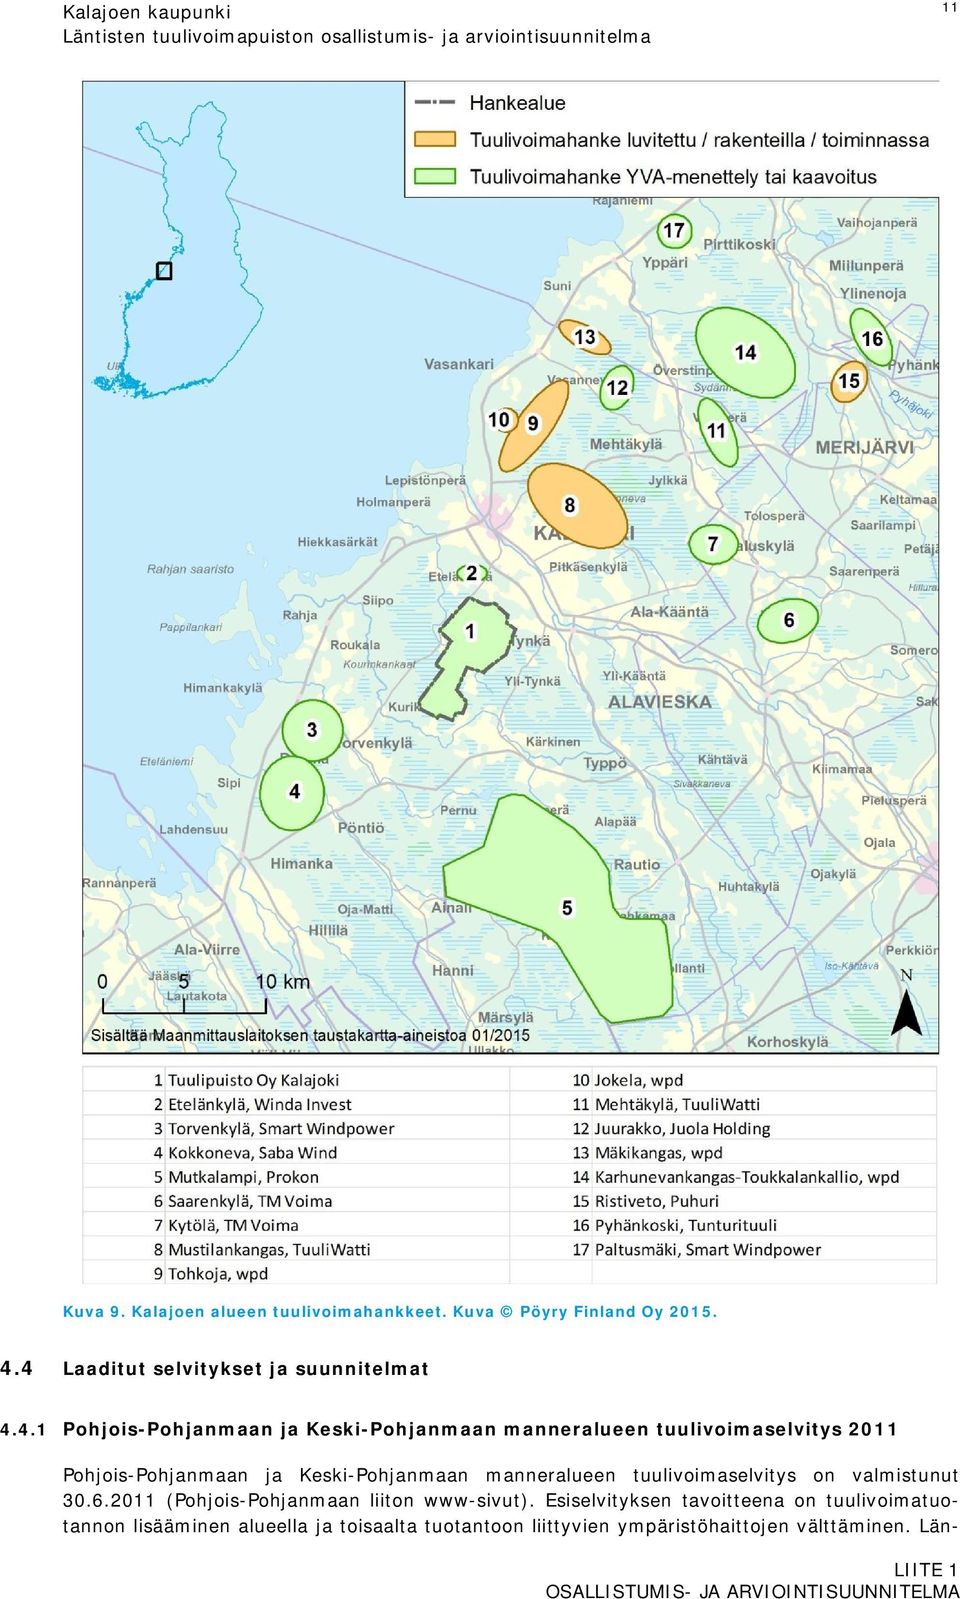 4 Laaditut selvitykset ja suunnitelmat 4.4.1 Pohjois-Pohjanmaan ja Keski-Pohjanmaan manneralueen tuulivoimaselvitys 2011 Pohjois-Pohjanmaan ja